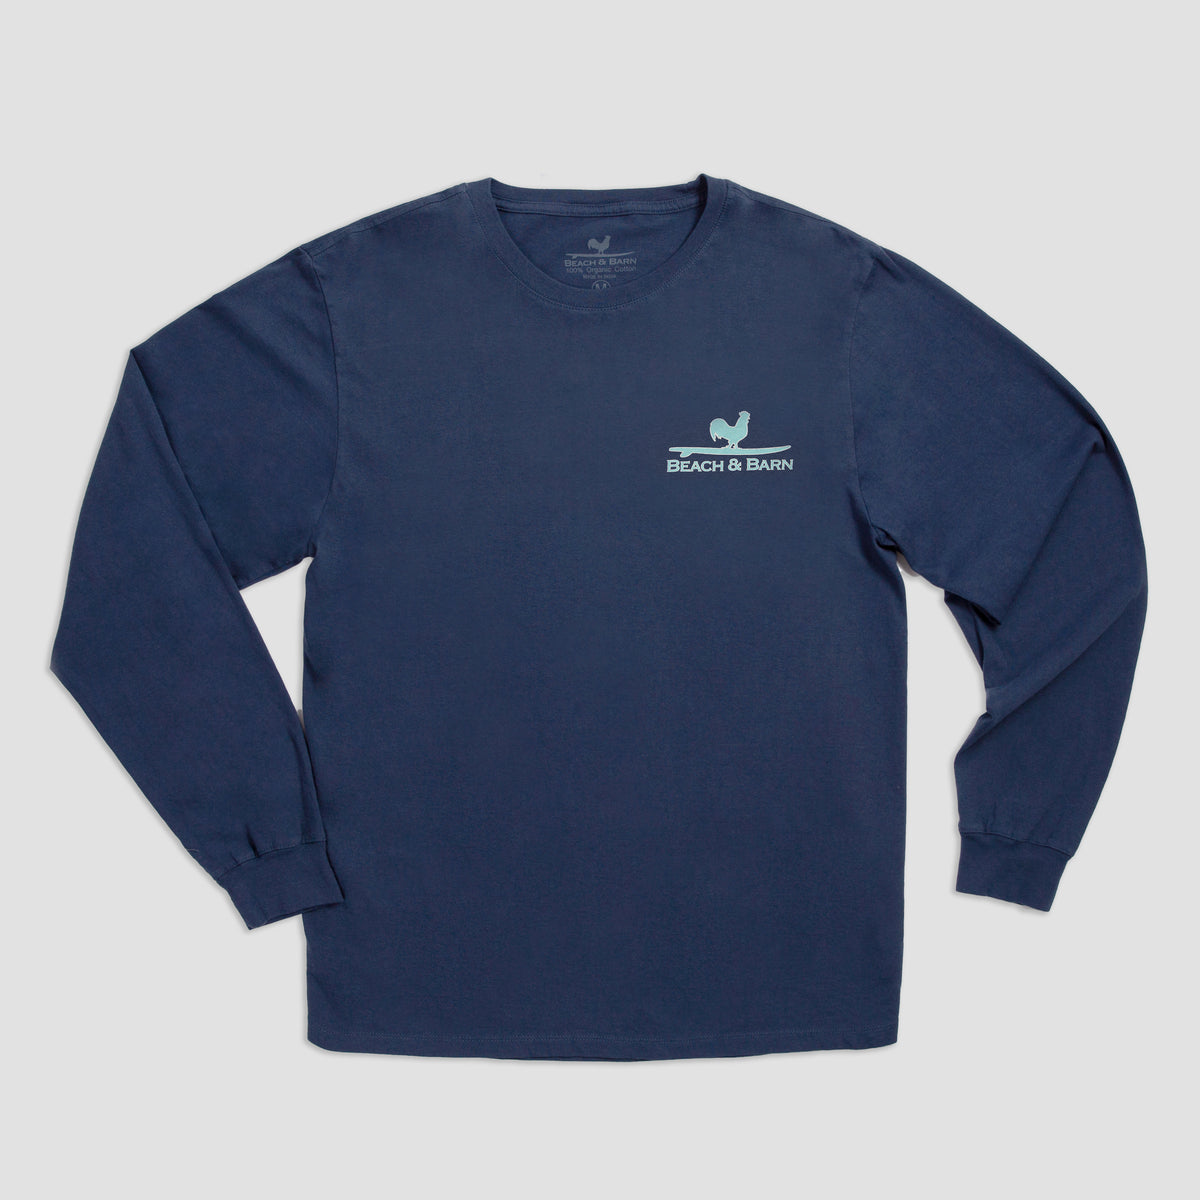 Sale - Farm Fin Long Sleeve Tee Shirt